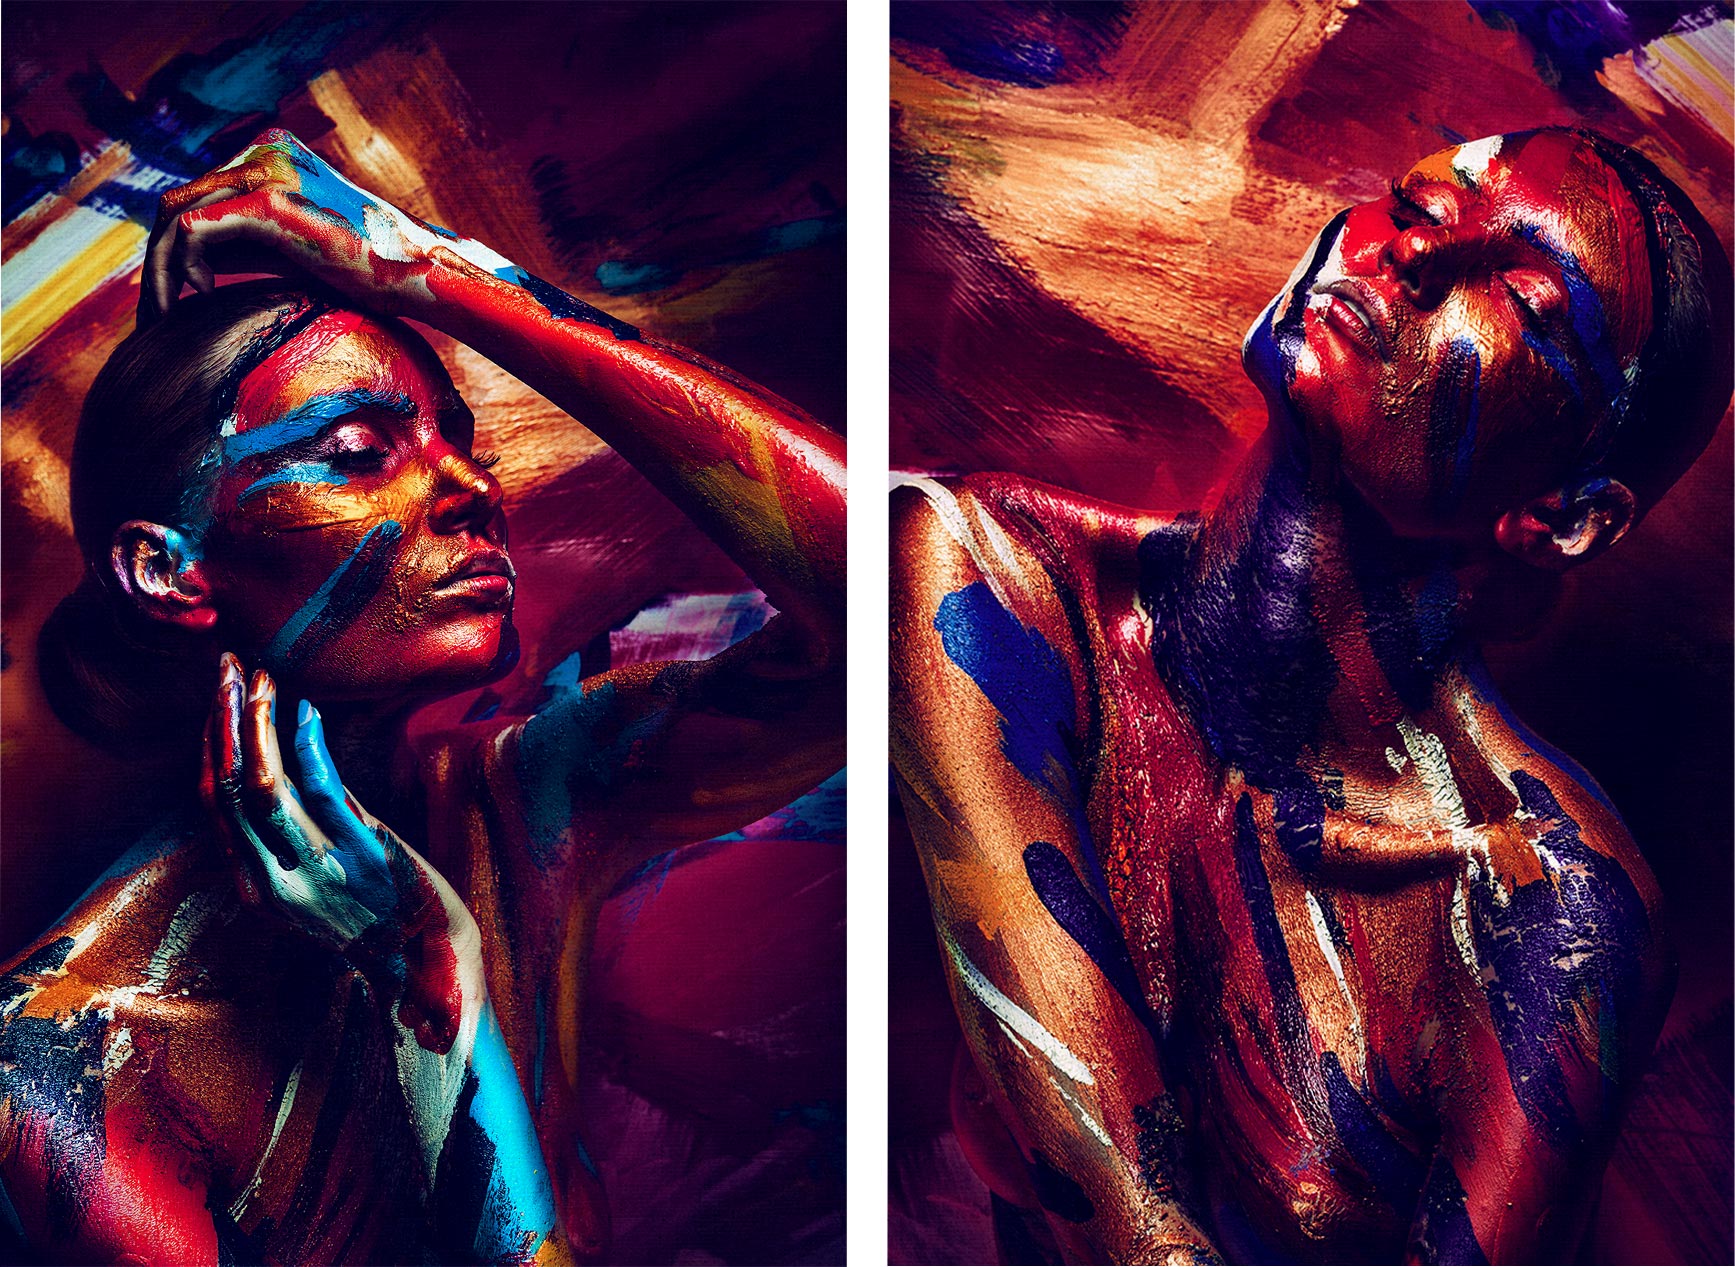 Kit 2 quadros retangulares - Duo mulher colorida